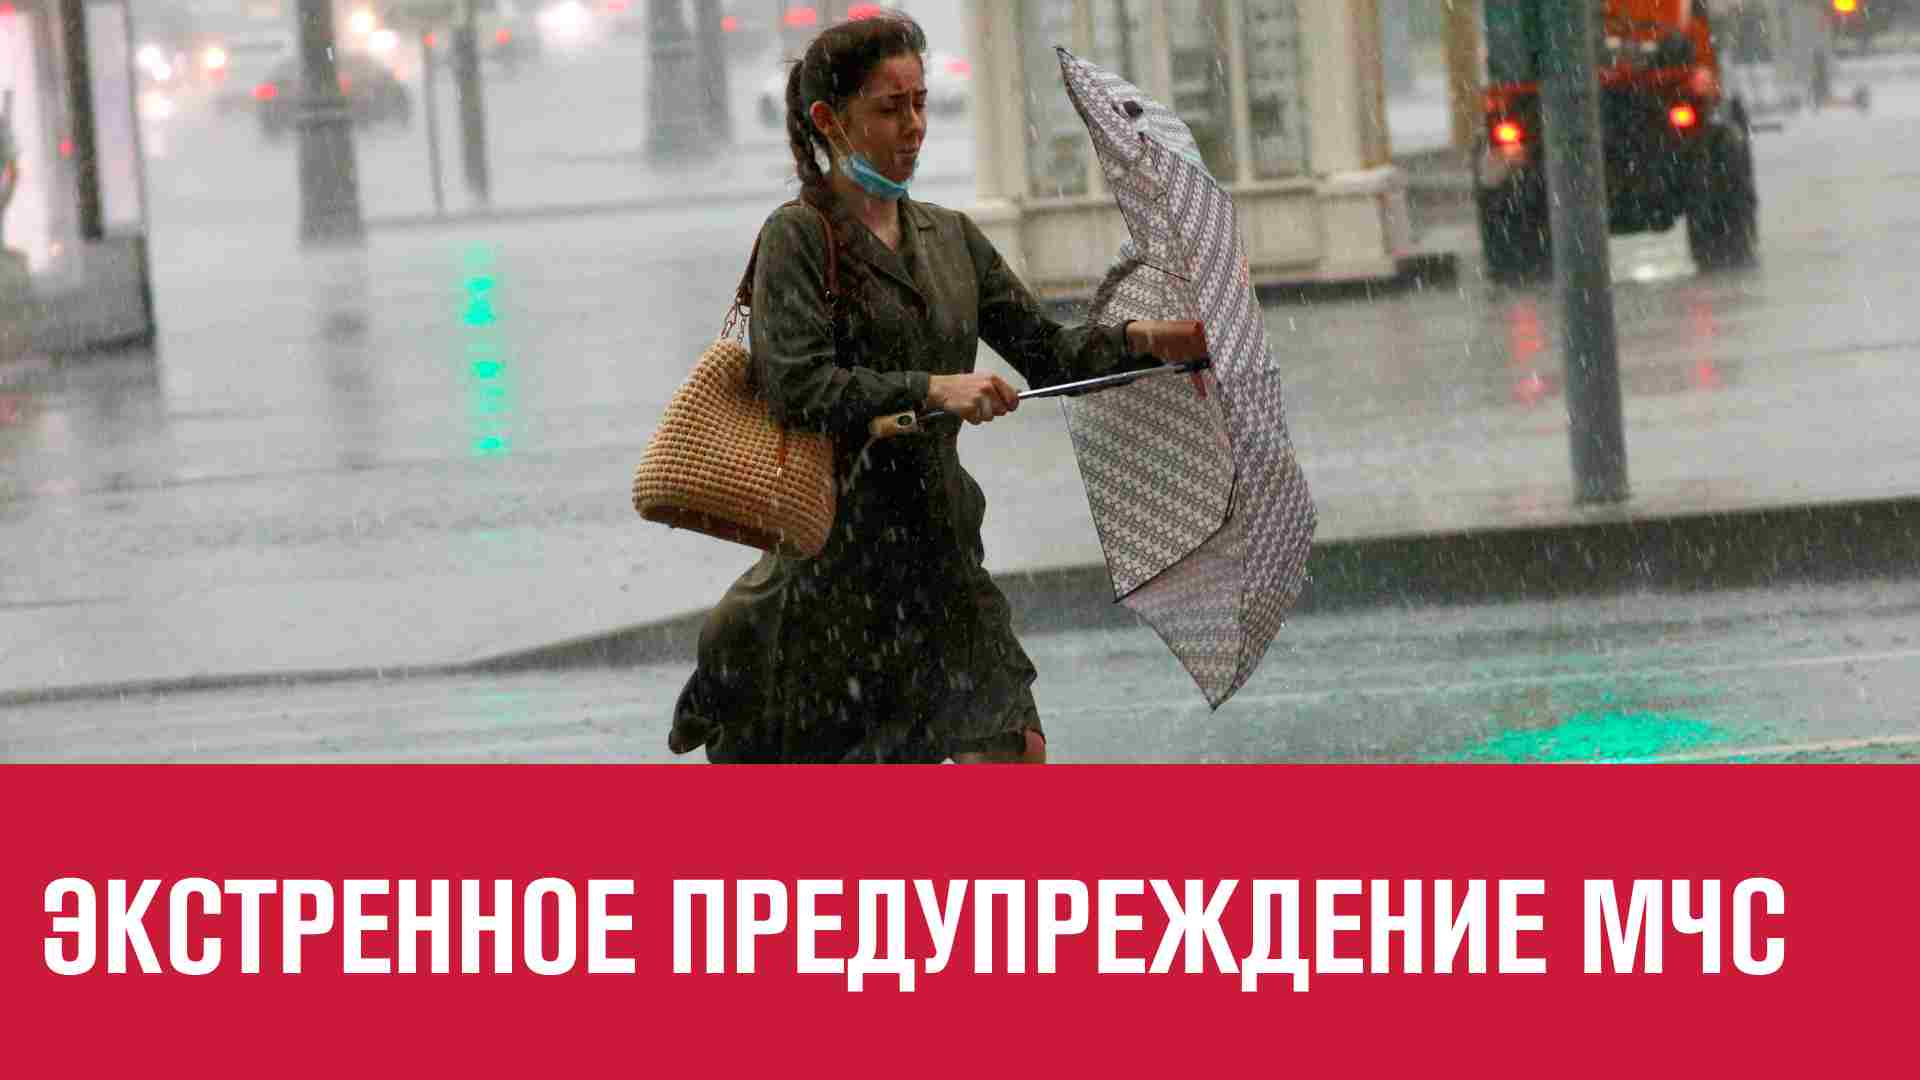 МЧС предупреждает о ливнях и сильном ветре - Москва FM